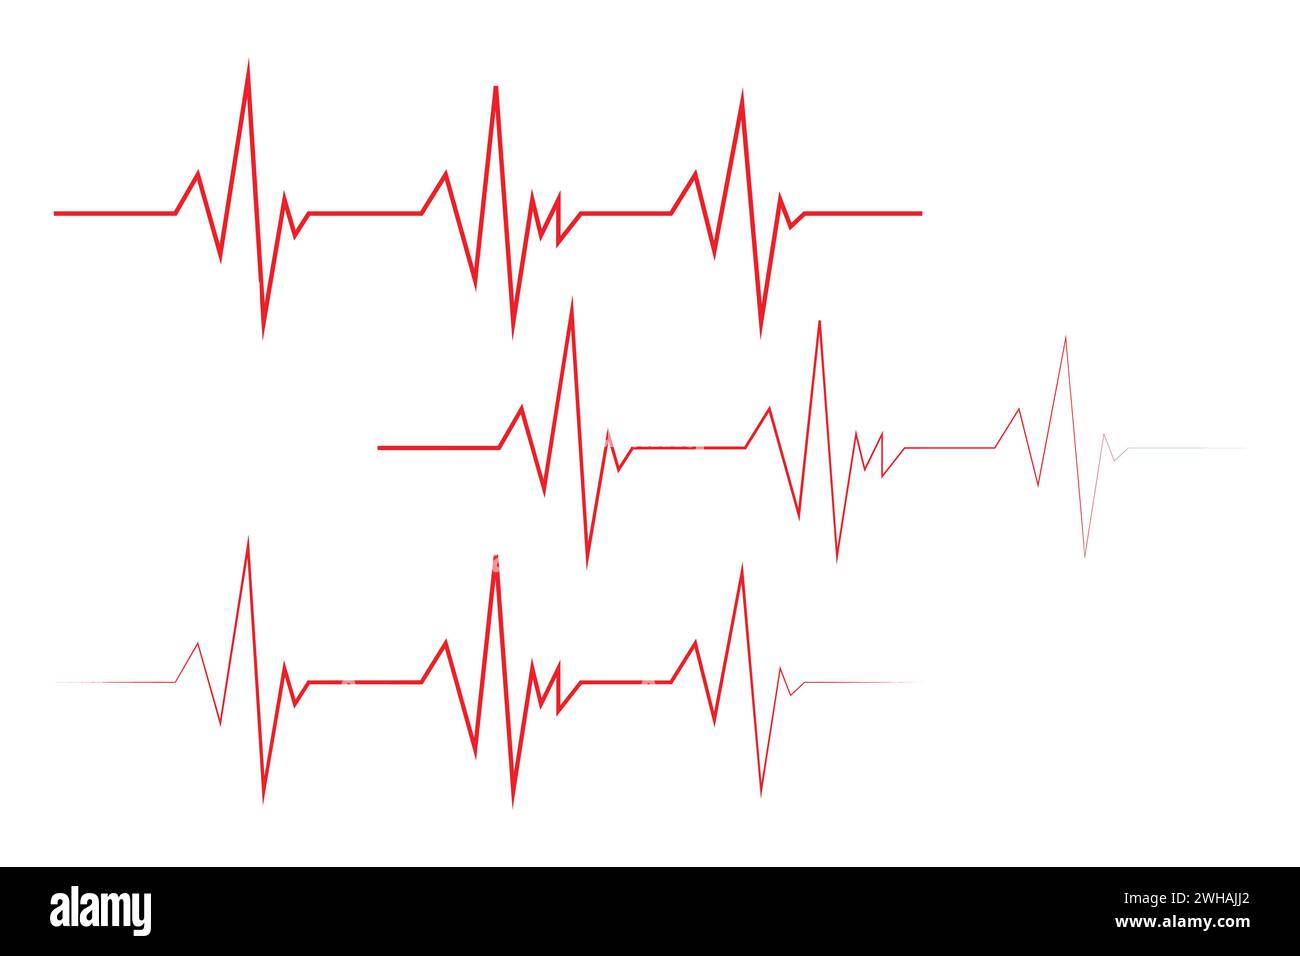 Simbolo dell'icona della linea del battito cardiaco ECG, simbolo del logo dell'ospedale relativo al polso cardiaco. Vettore. Illustrazione Vettoriale